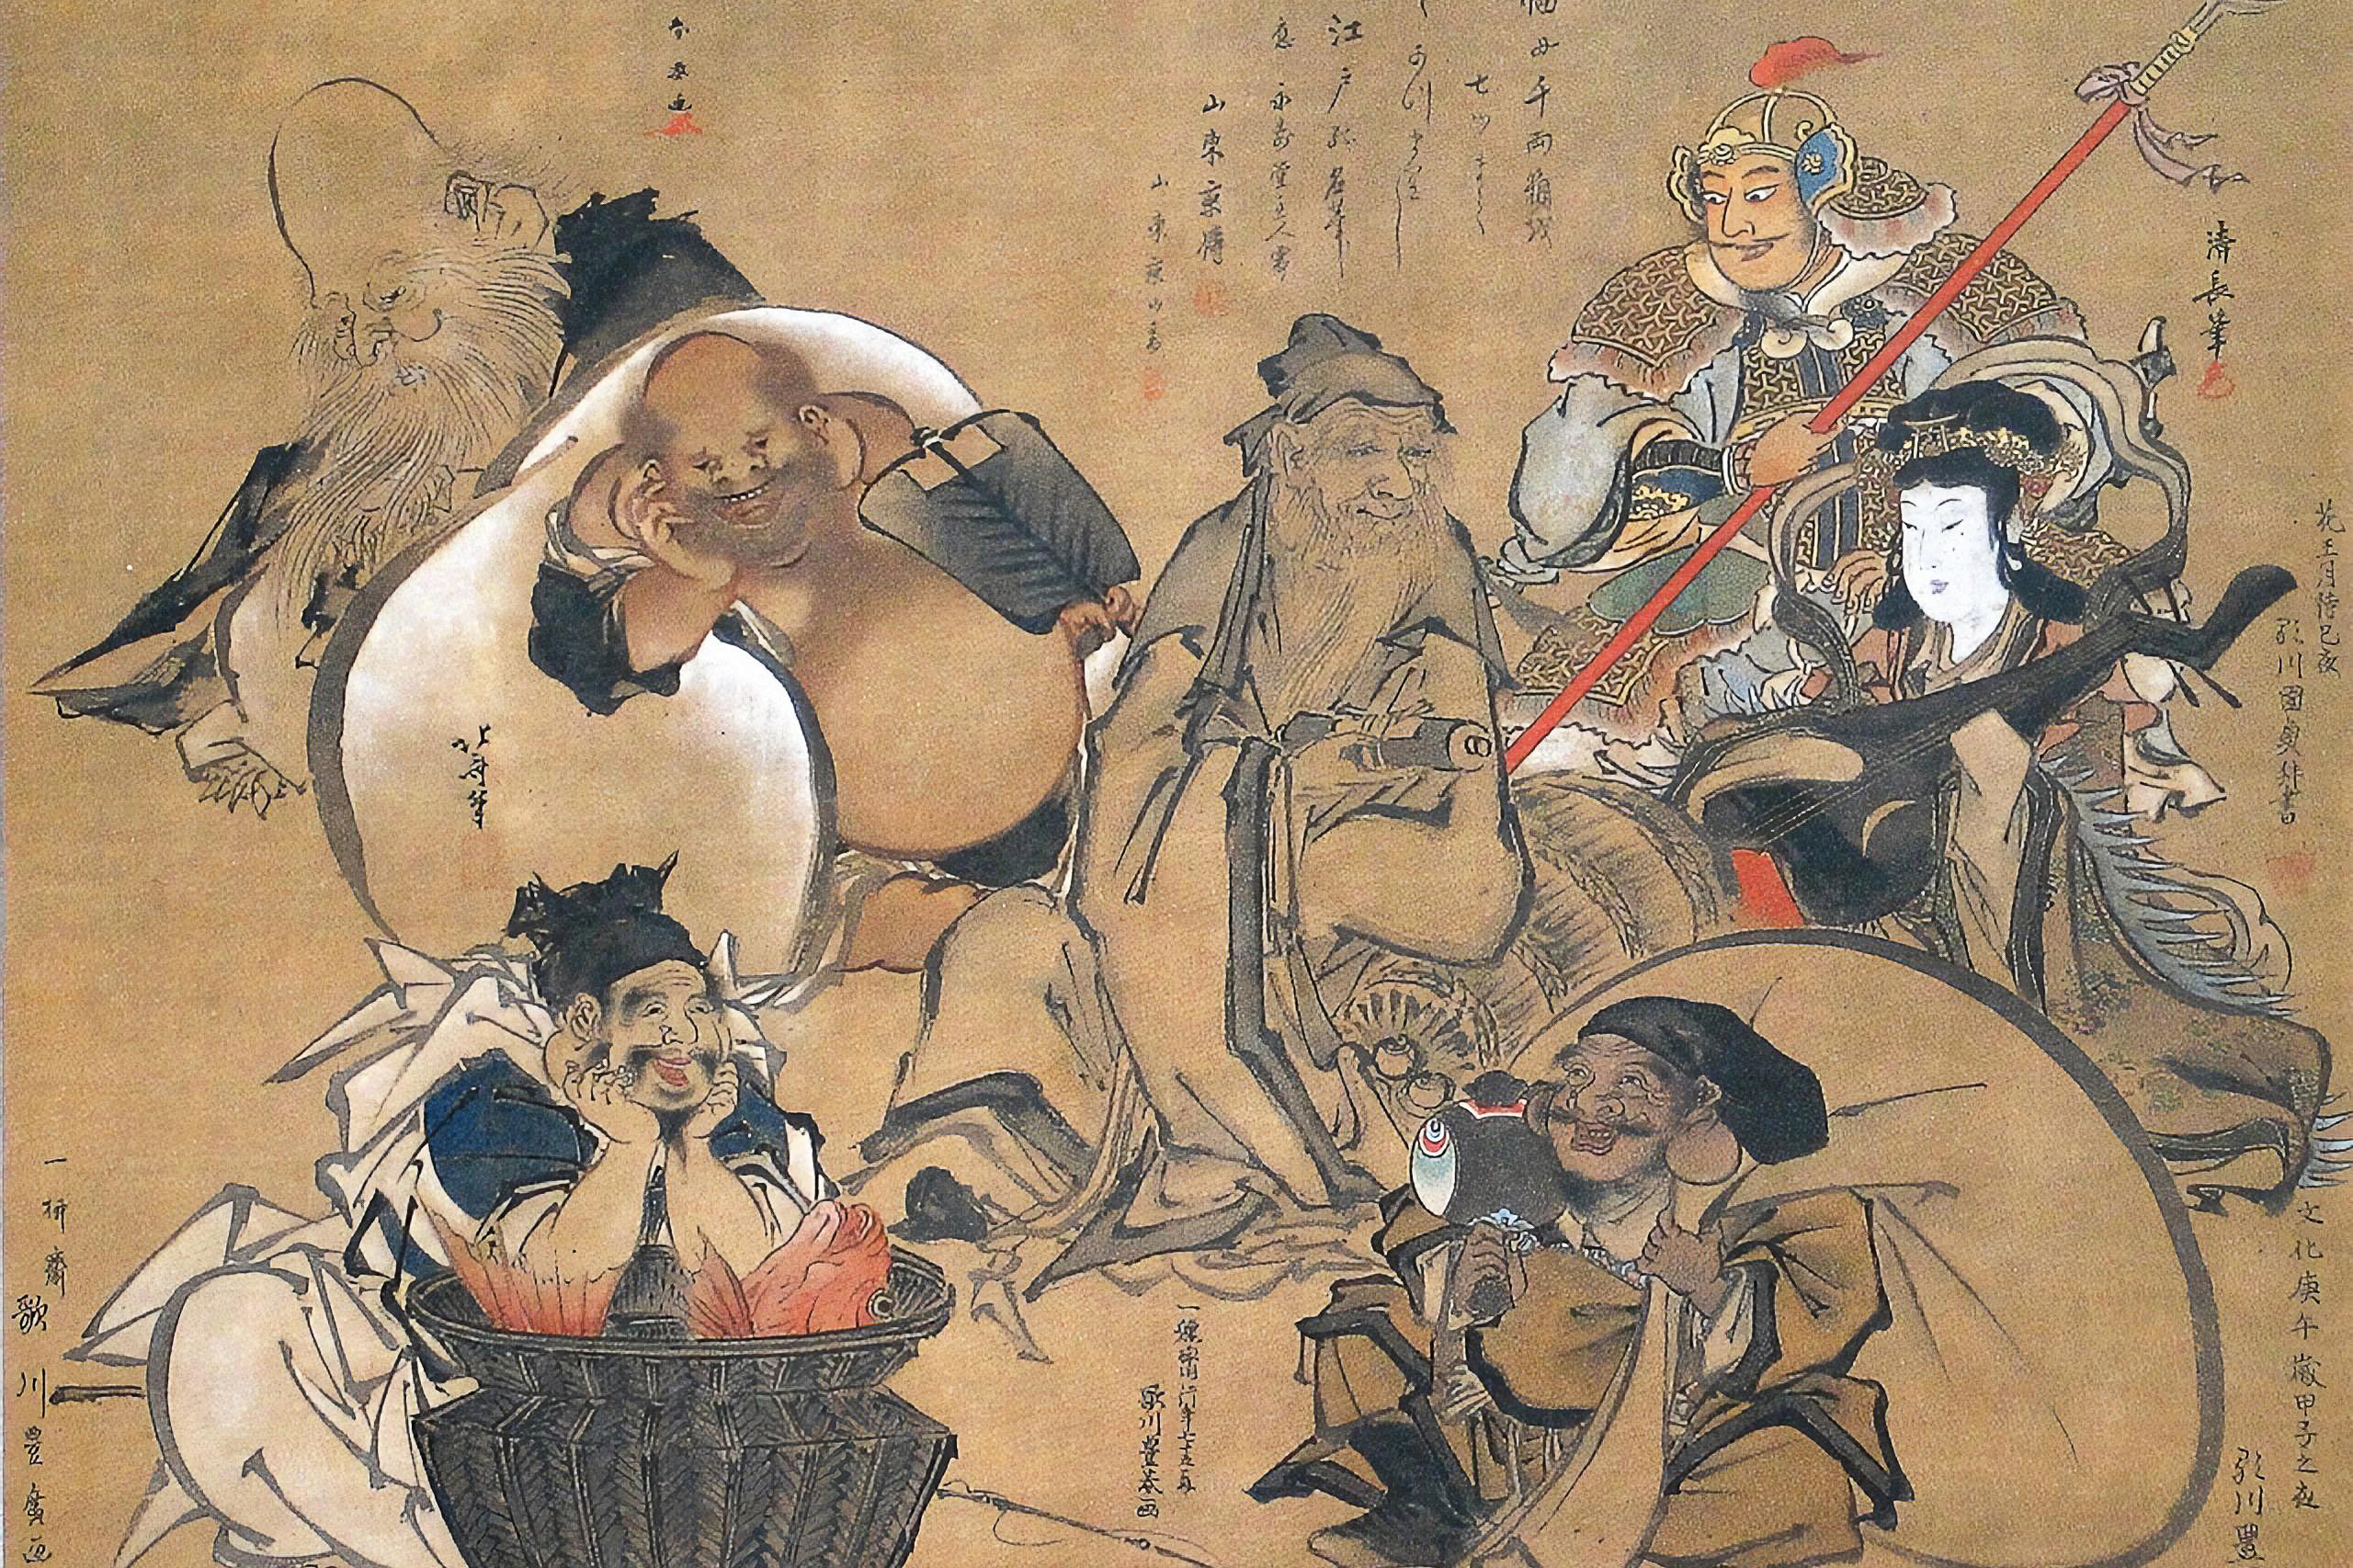 Japanese Mythology 101: The Ultimate Guide - MythBank